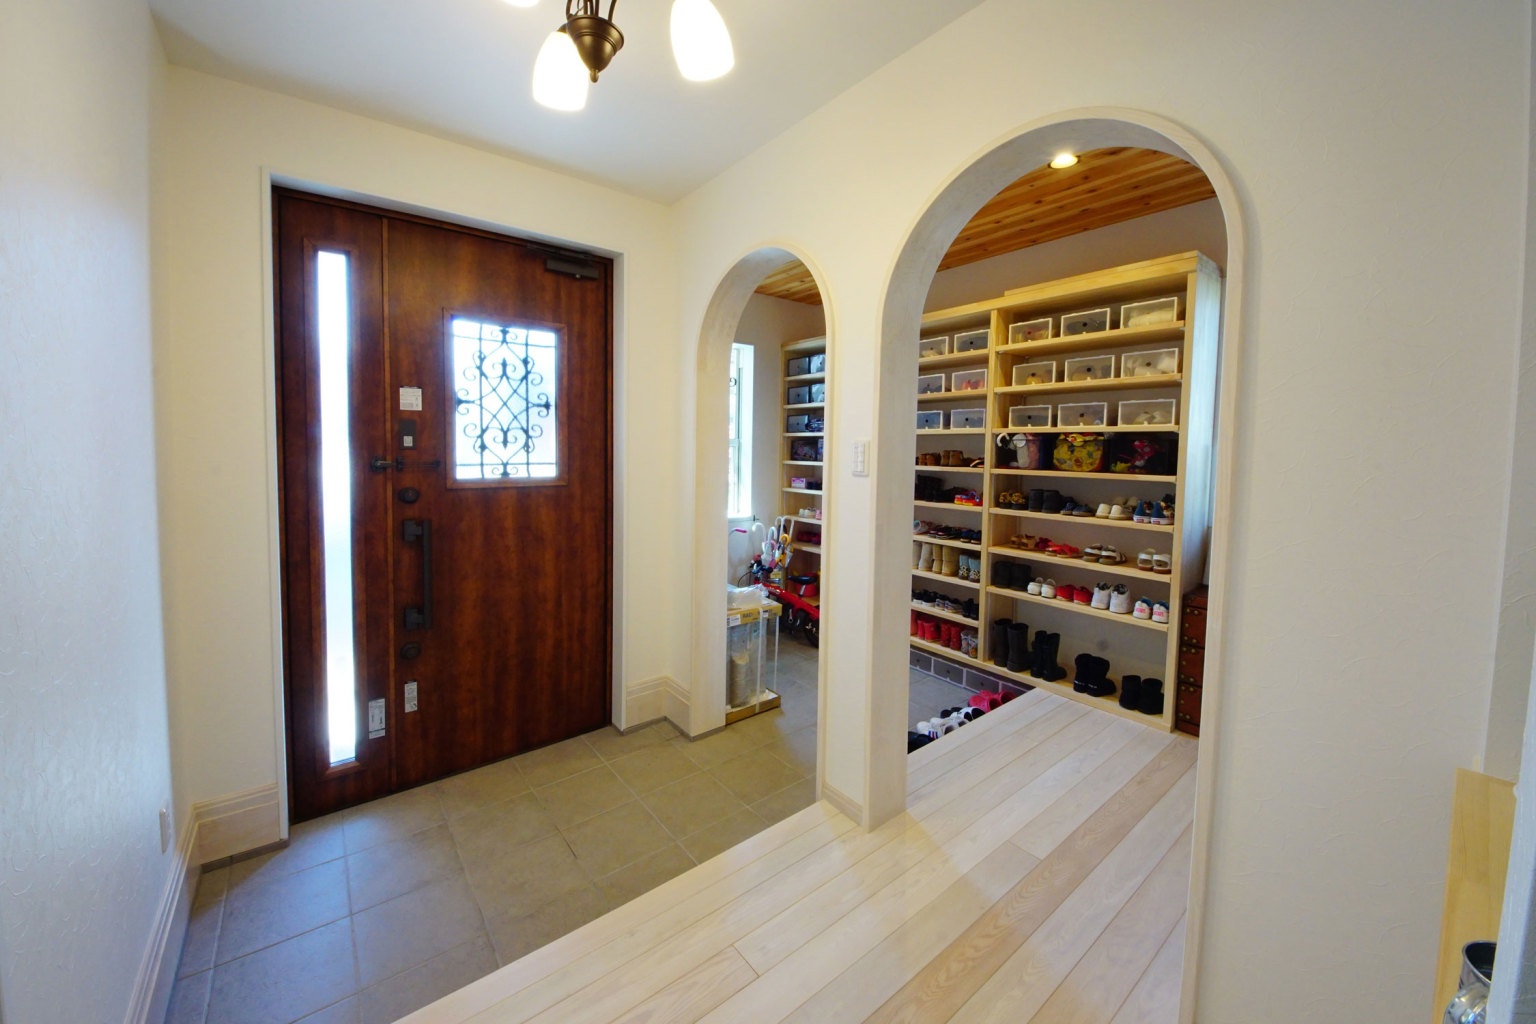 シューズクロークを設けてスッキリした玄関。オープンな棚とすることで、靴の出し入れがしやすく通気性も抜群です。